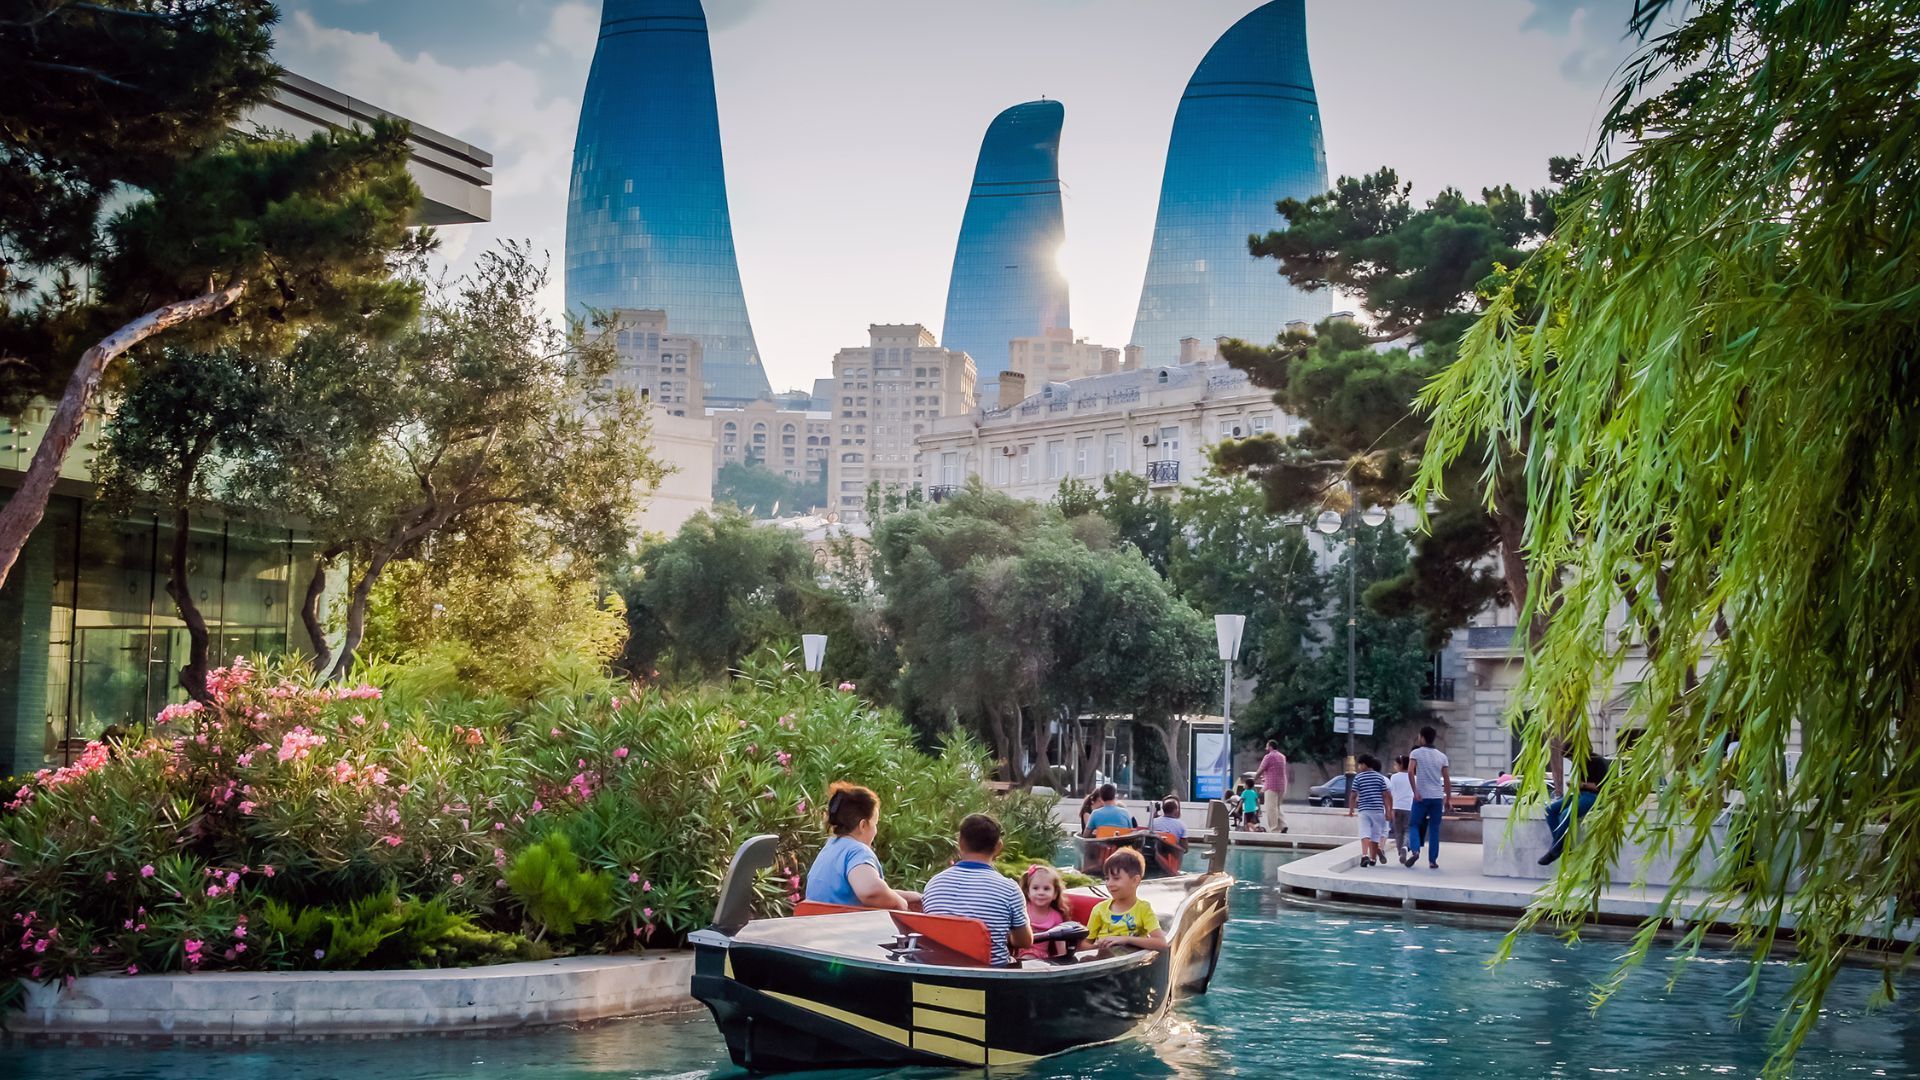 beautiful places in azerbaijan